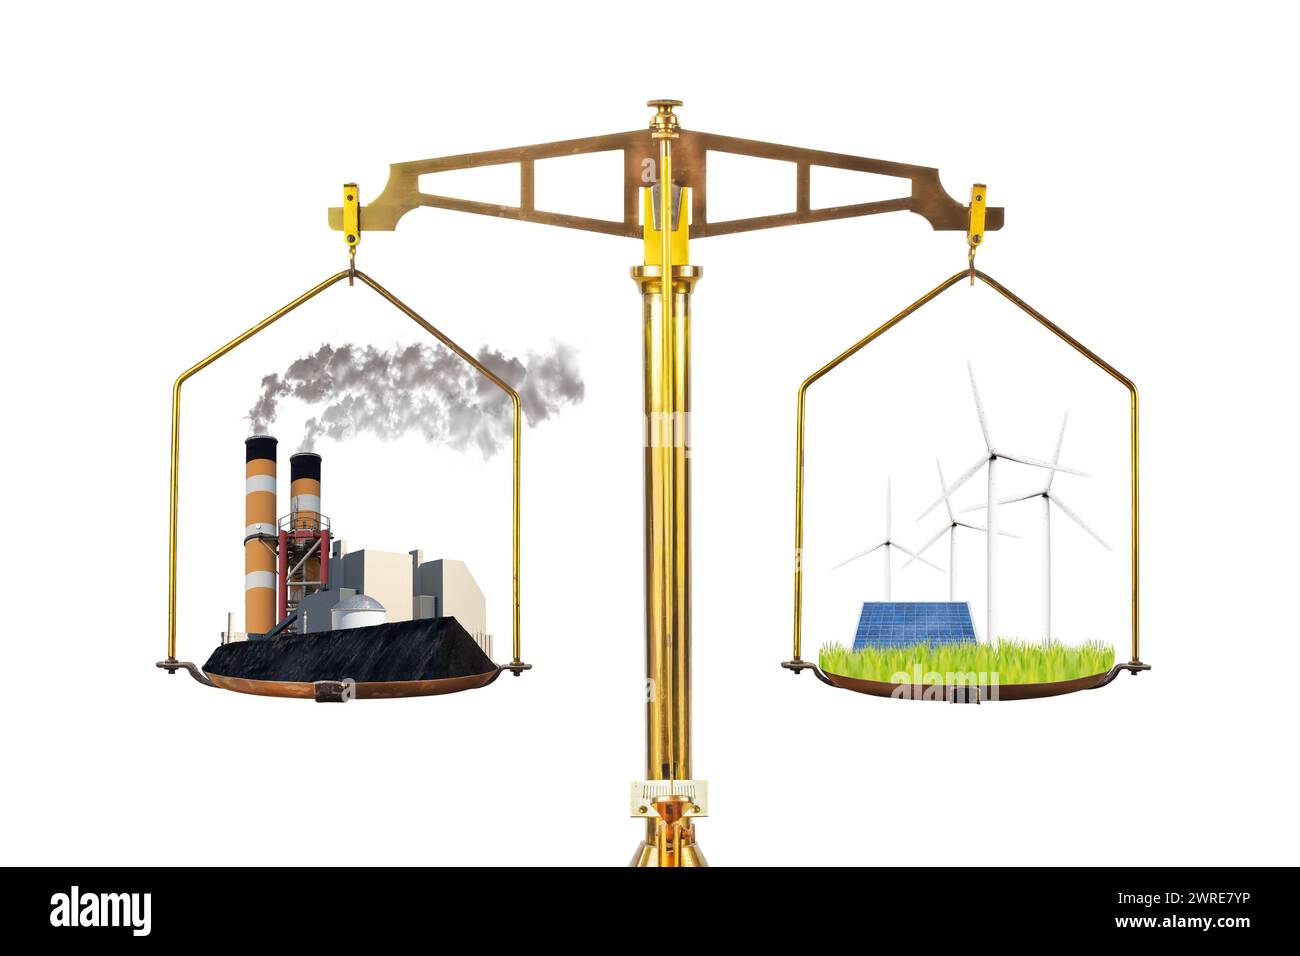 Konzept der konventionellen schadstoffbelastenden Energiefabrik versus erneuerbarer Energie mit Turbinen und Solarpaneelen auf einer Bilanzskala Stockfoto